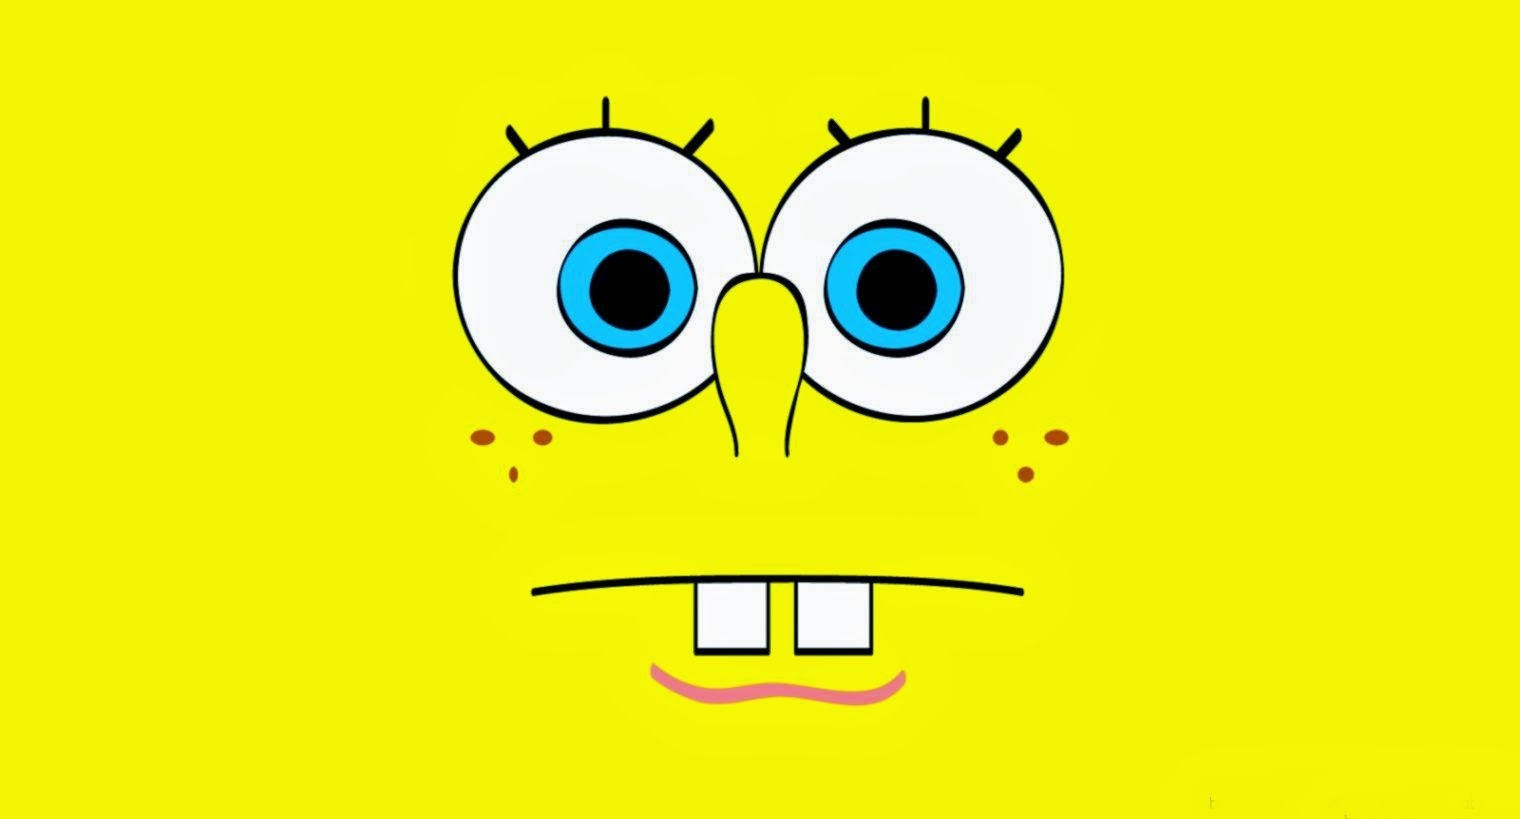 Hình nền Spongebob là món quà tuyệt vời cho những người yêu thích chú bọt biển nghịch ngợm và bạn bè của anh ta. Hãy xem ngay hình ảnh liên quan để khám phá thế giới vui nhộn, đầy màu sắc của Spongebob!